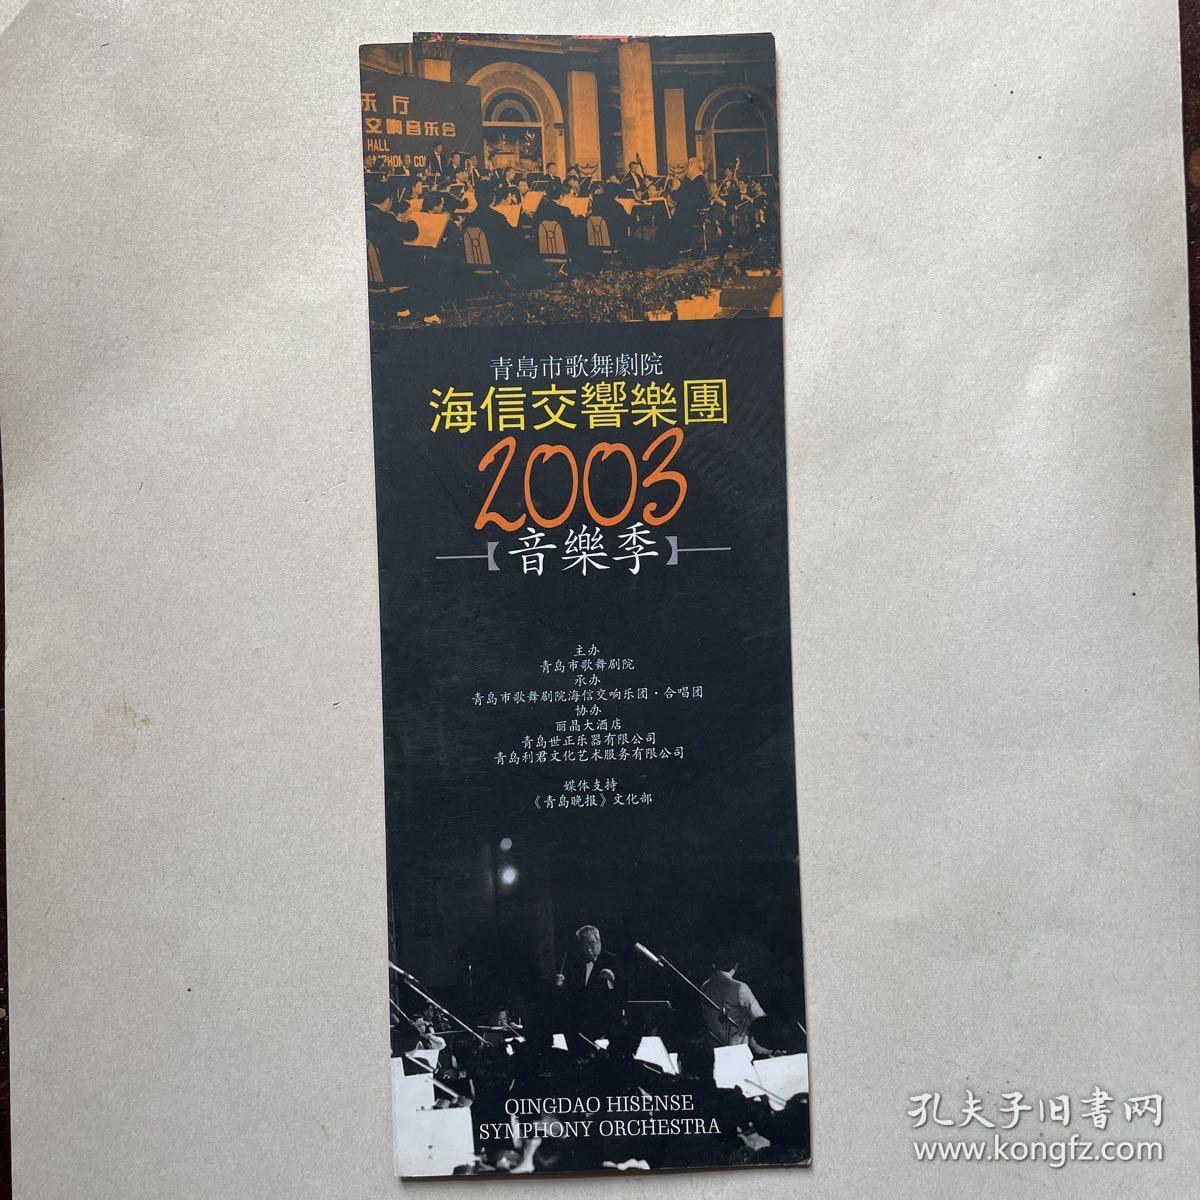 青岛市歌舞剧团海信交响乐团2003音乐季入场券